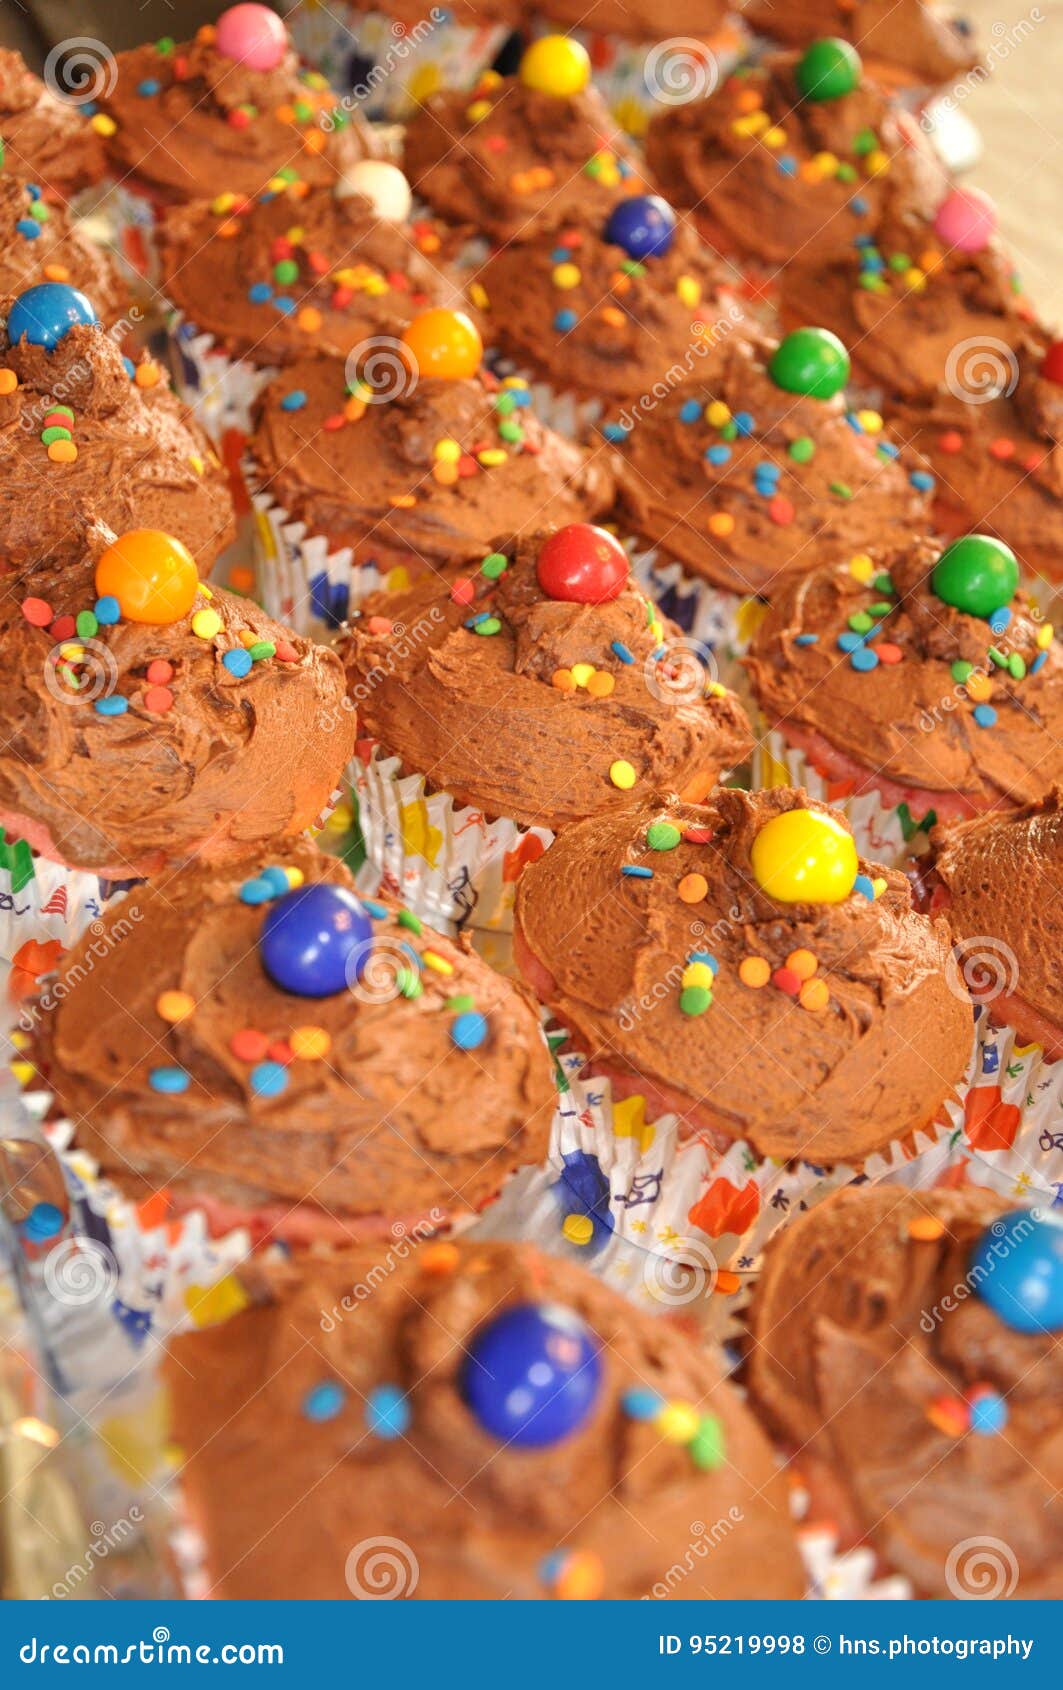 Een dienblad van chocolade-berijpte en confetti-bestrooide verjaardag cupcakes wacht op een partij Elke cupcake wordt bedekt met een kleurrijke gumball